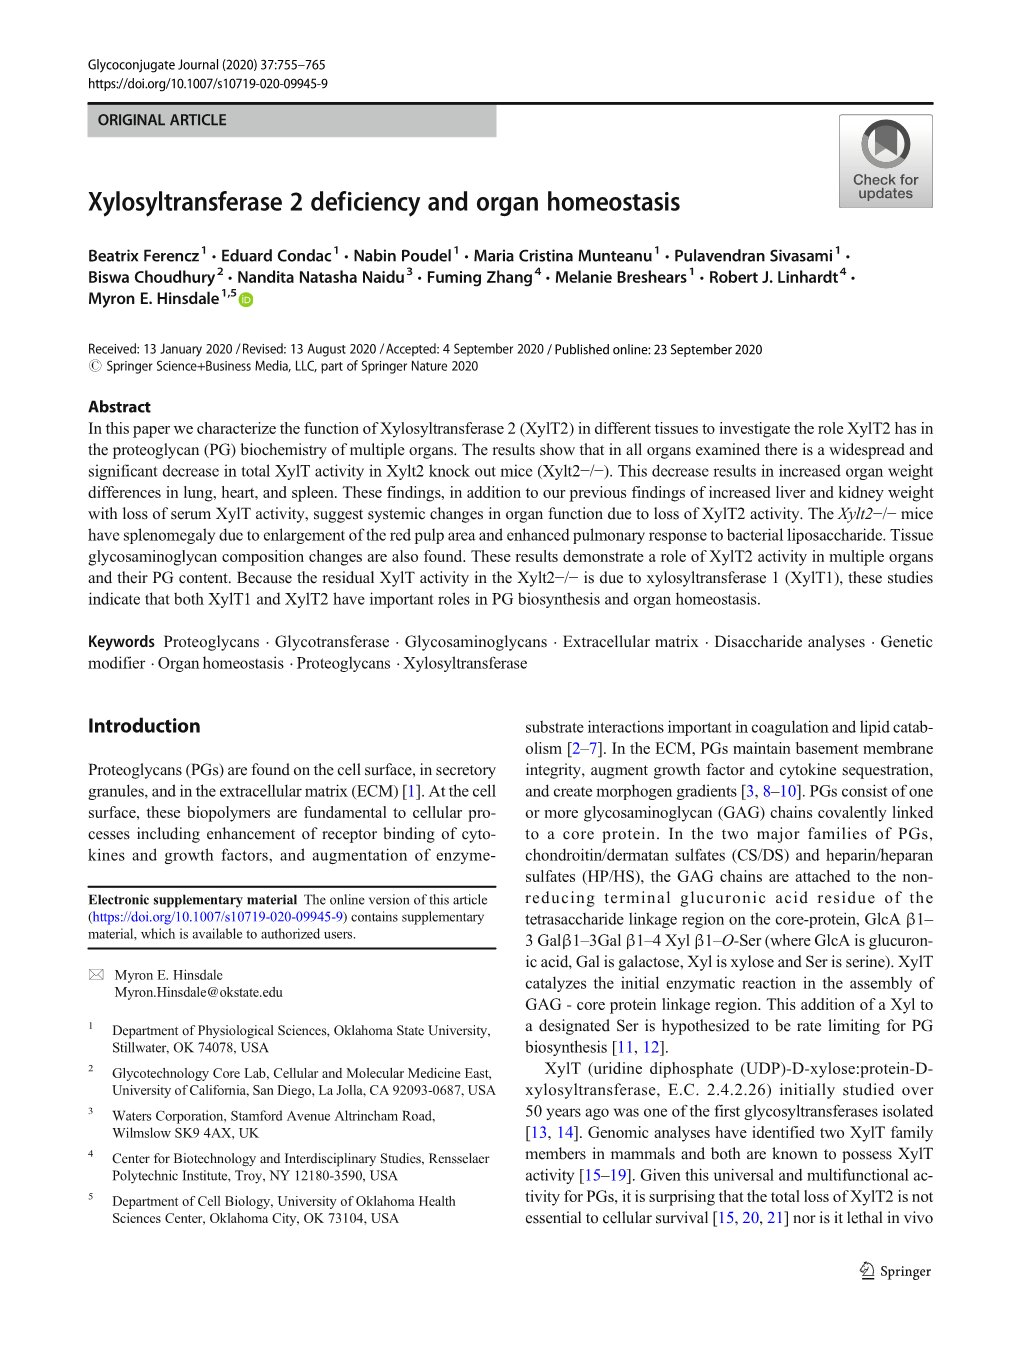 Xylosyltransferase 2 Deficiency and Organ Homeostasis